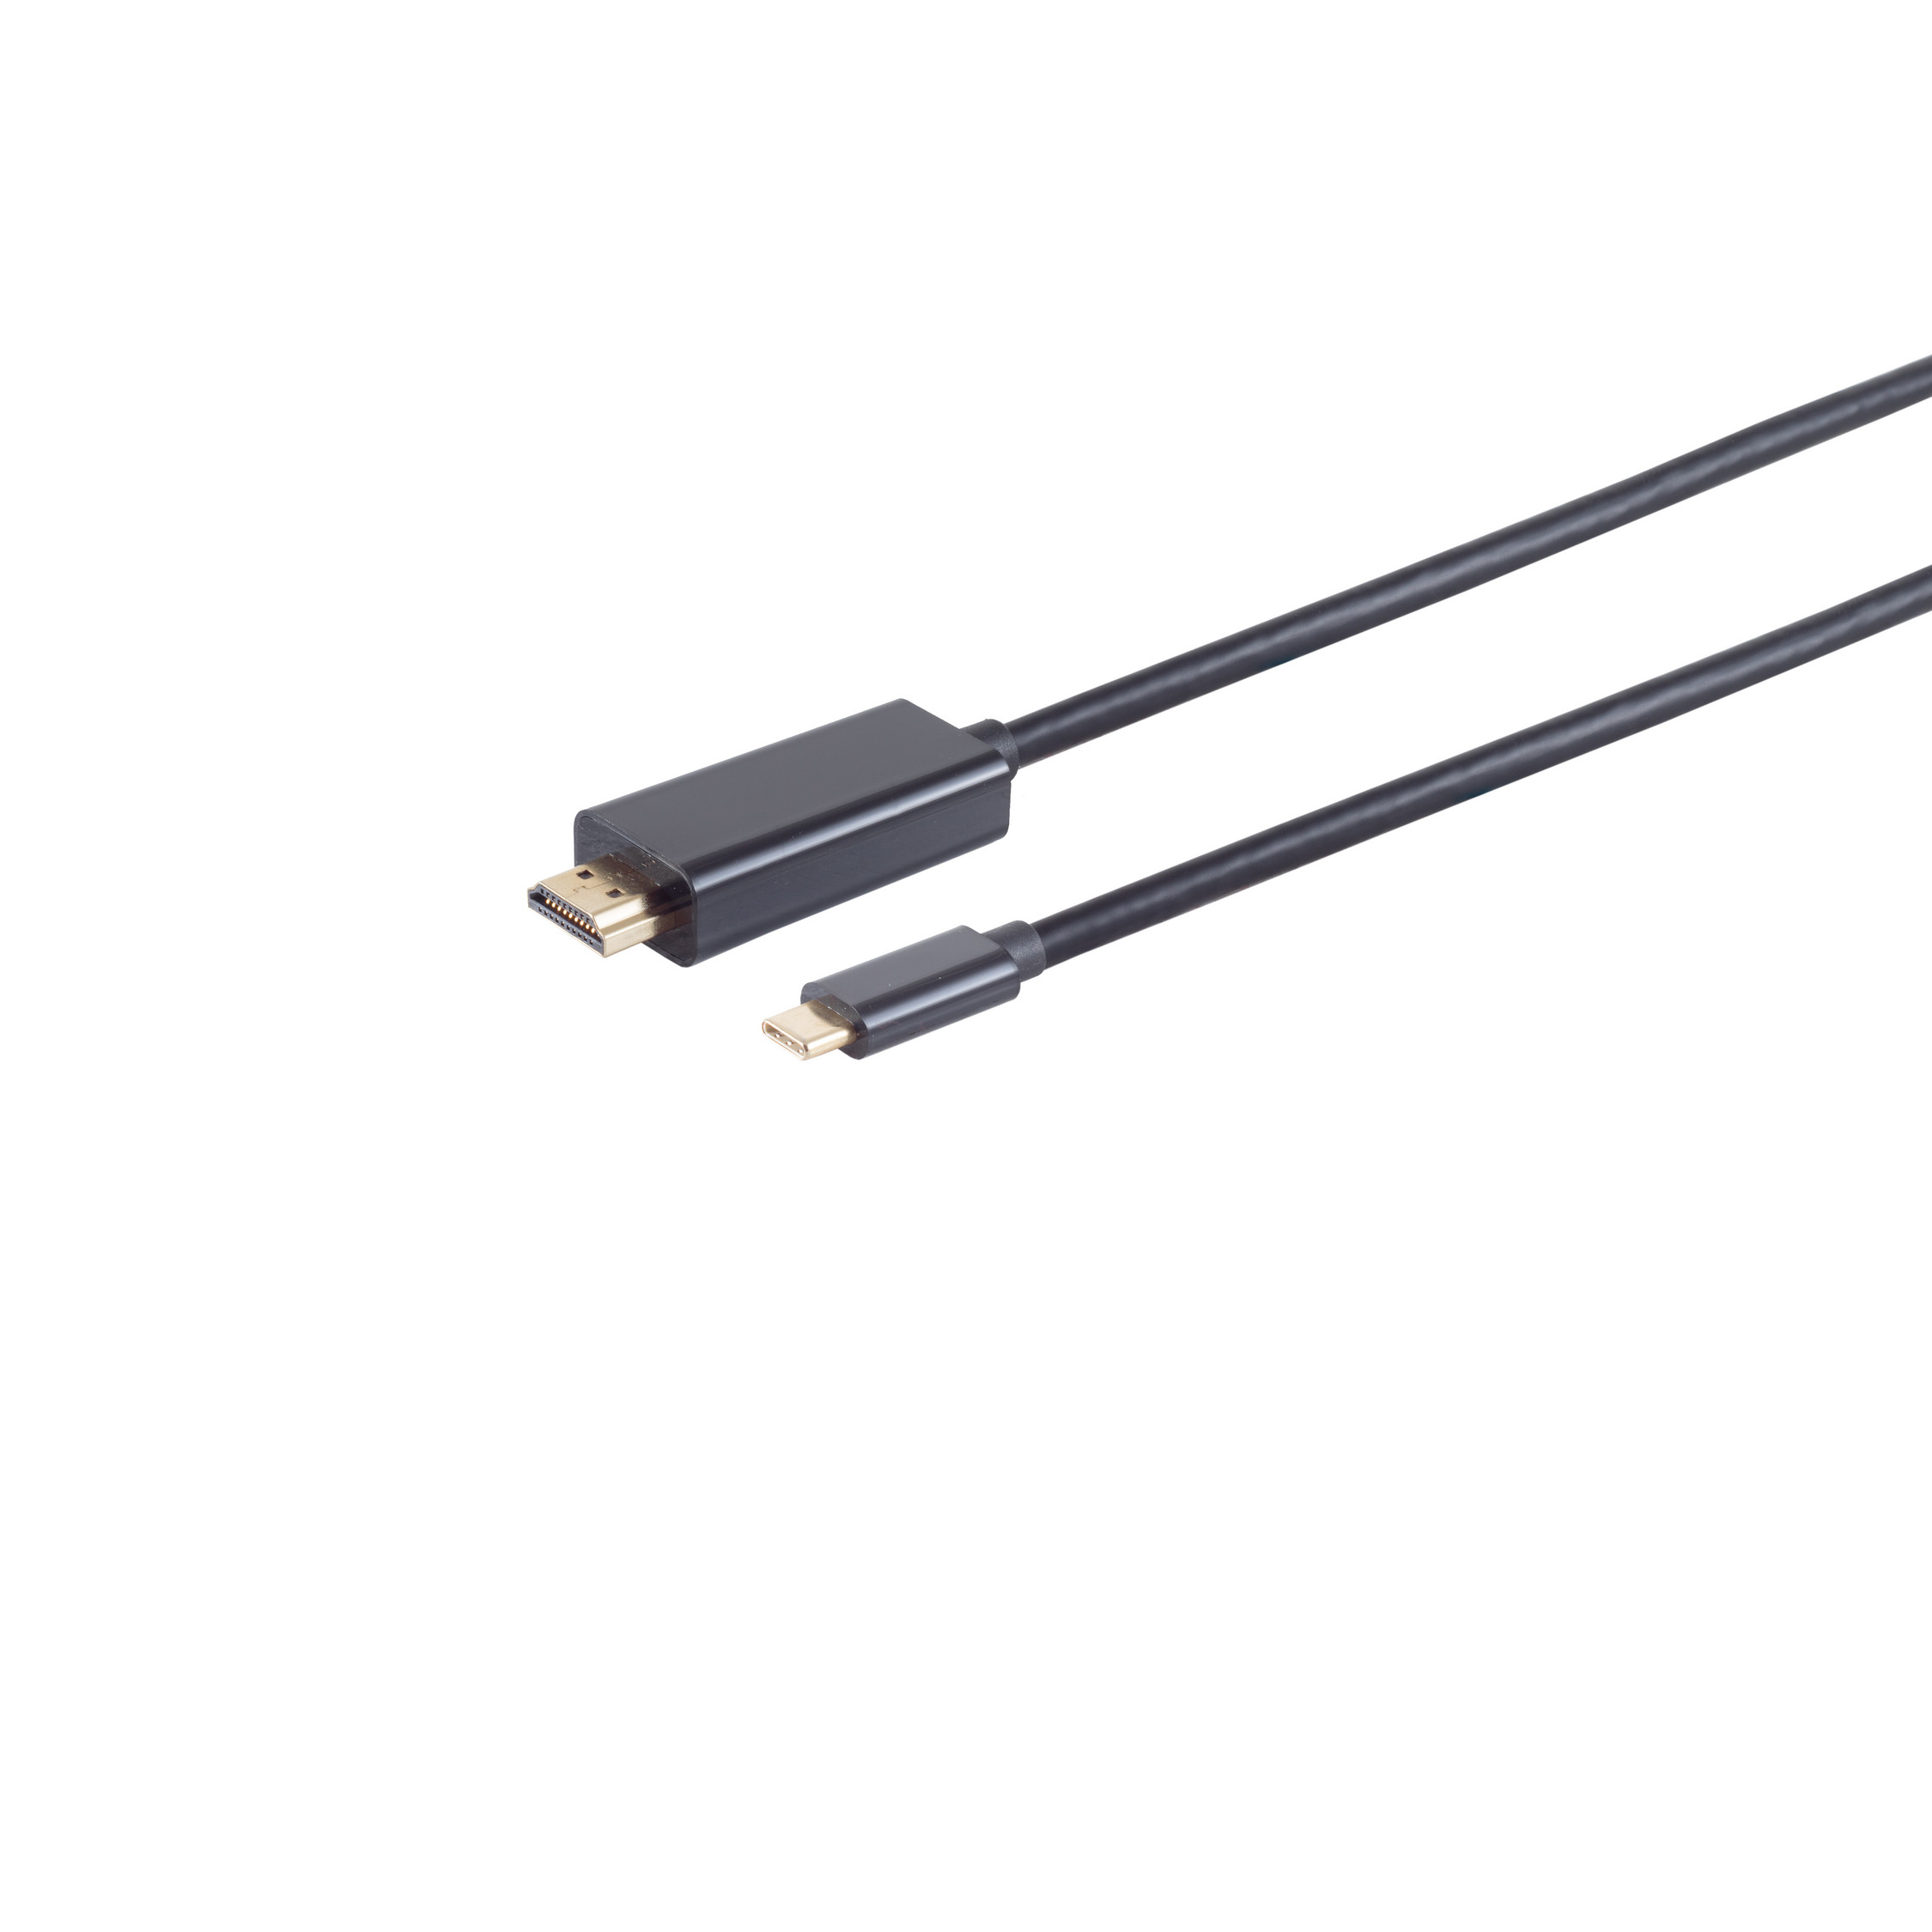 3m 3.1 C KABELBUDE A HDMI USB Stecker/ schwarz, HDMI Stecker, 4K, Kabel